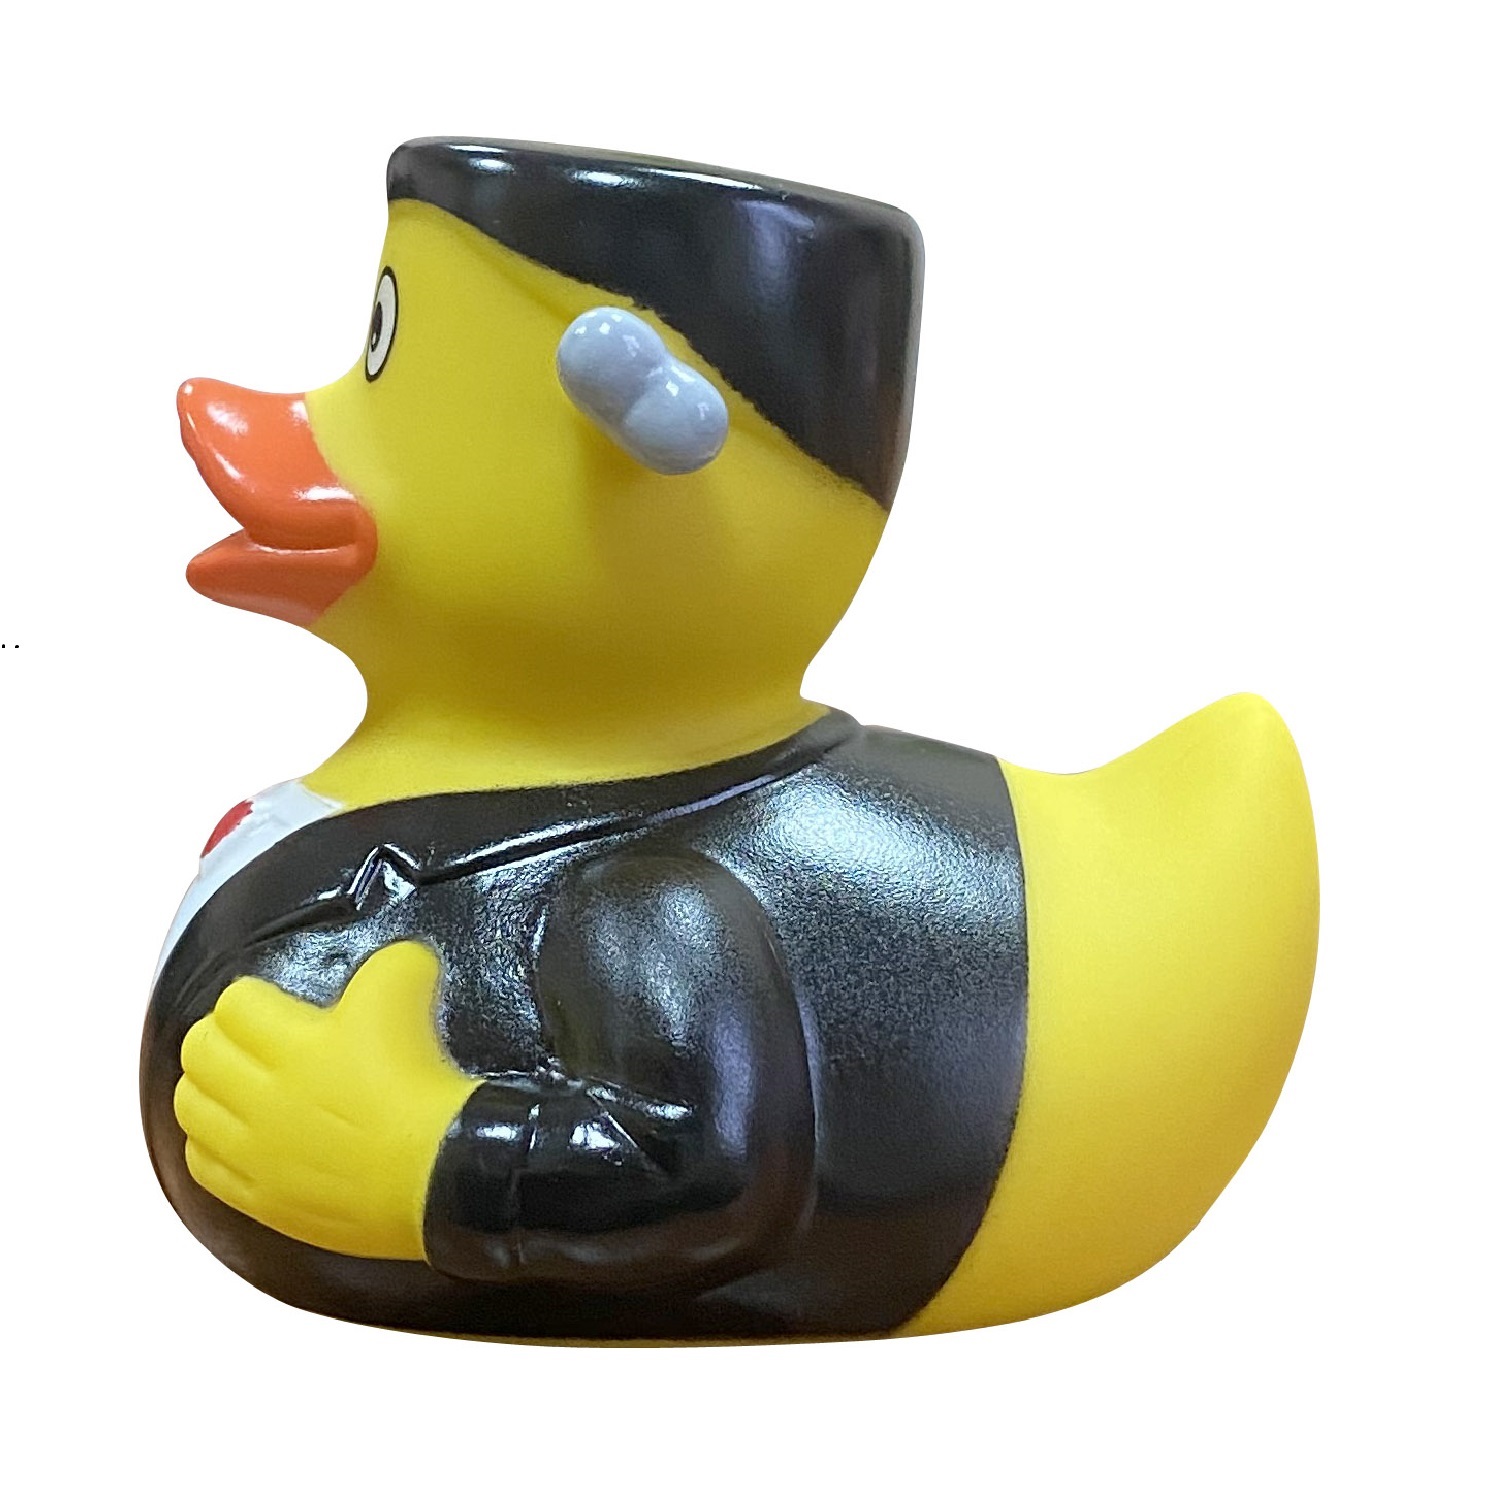 Игрушка Funny ducks для ванной Монстр Ф уточка 1302 - фото 2